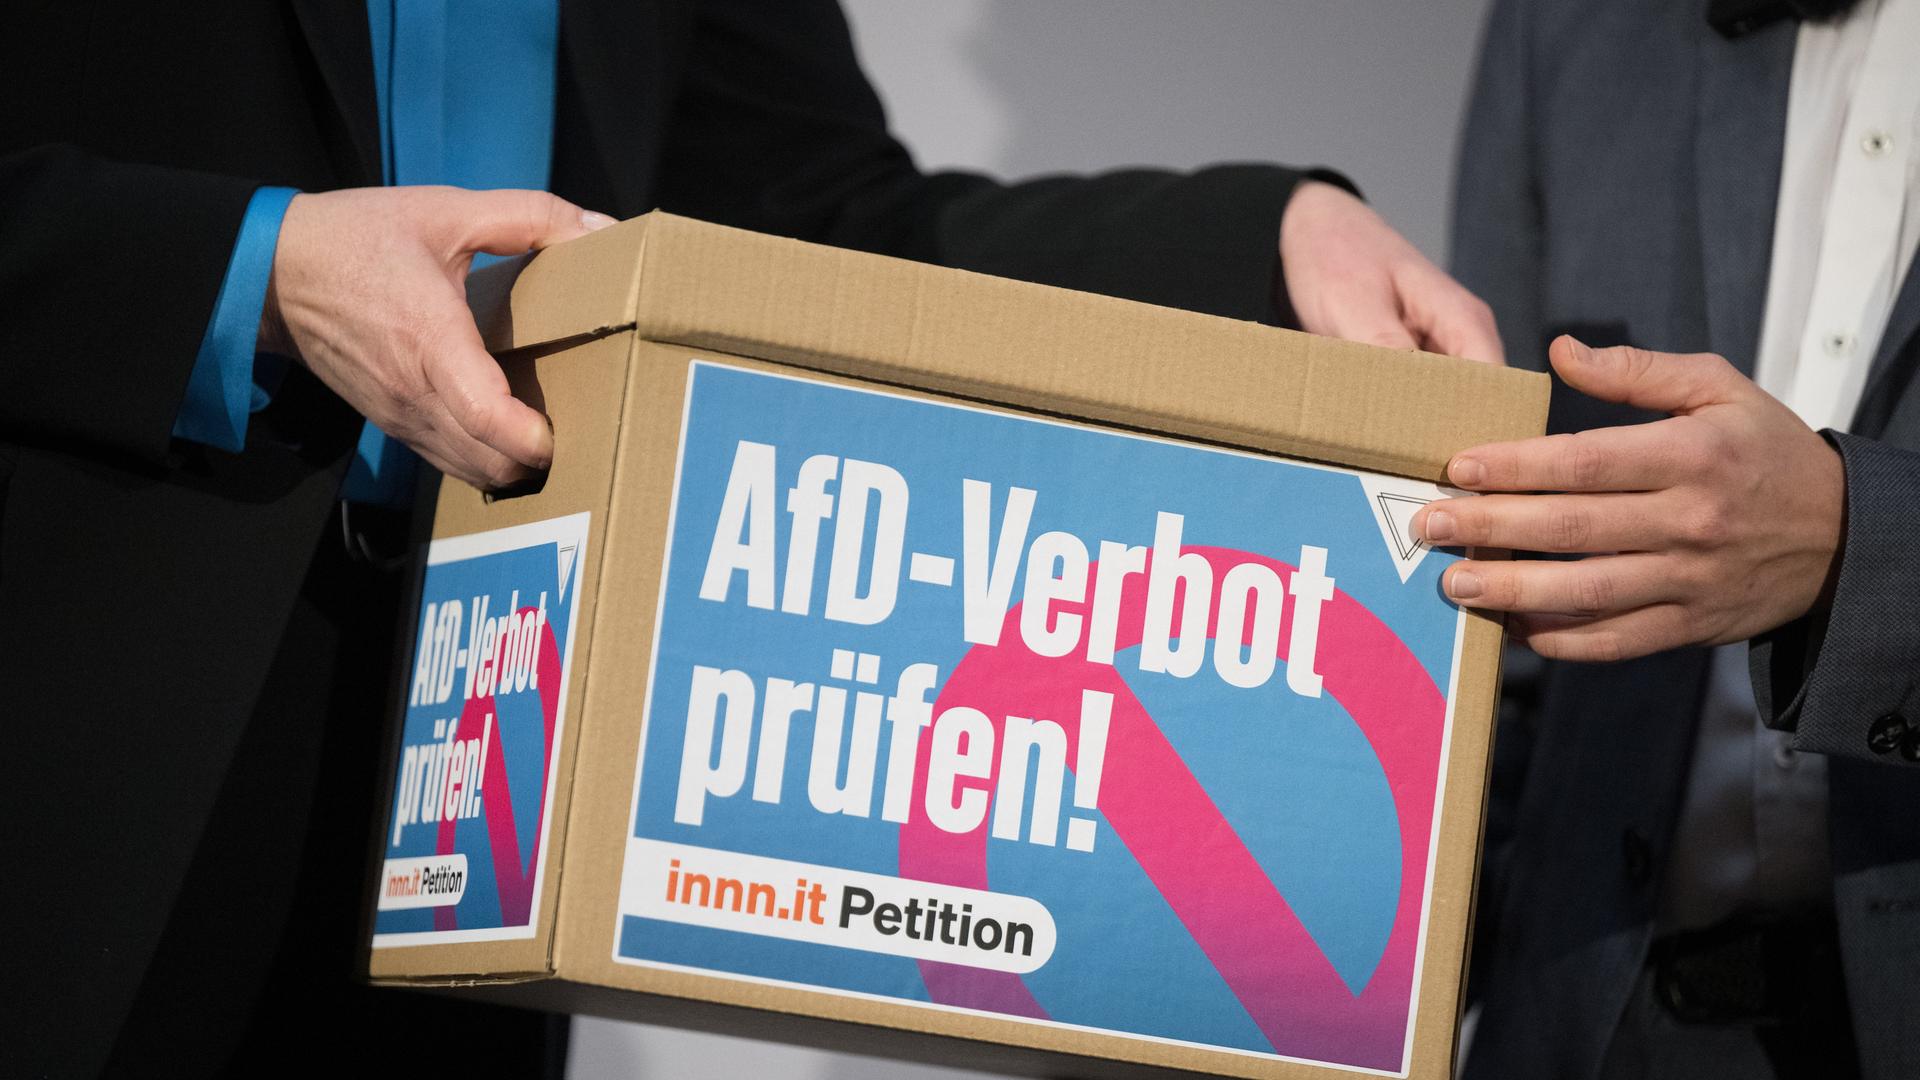 Ein Händepaar übergibt einen Karton mit Unterschriften der Petition "AfD-Verbot prüfen!" an ein anderes.